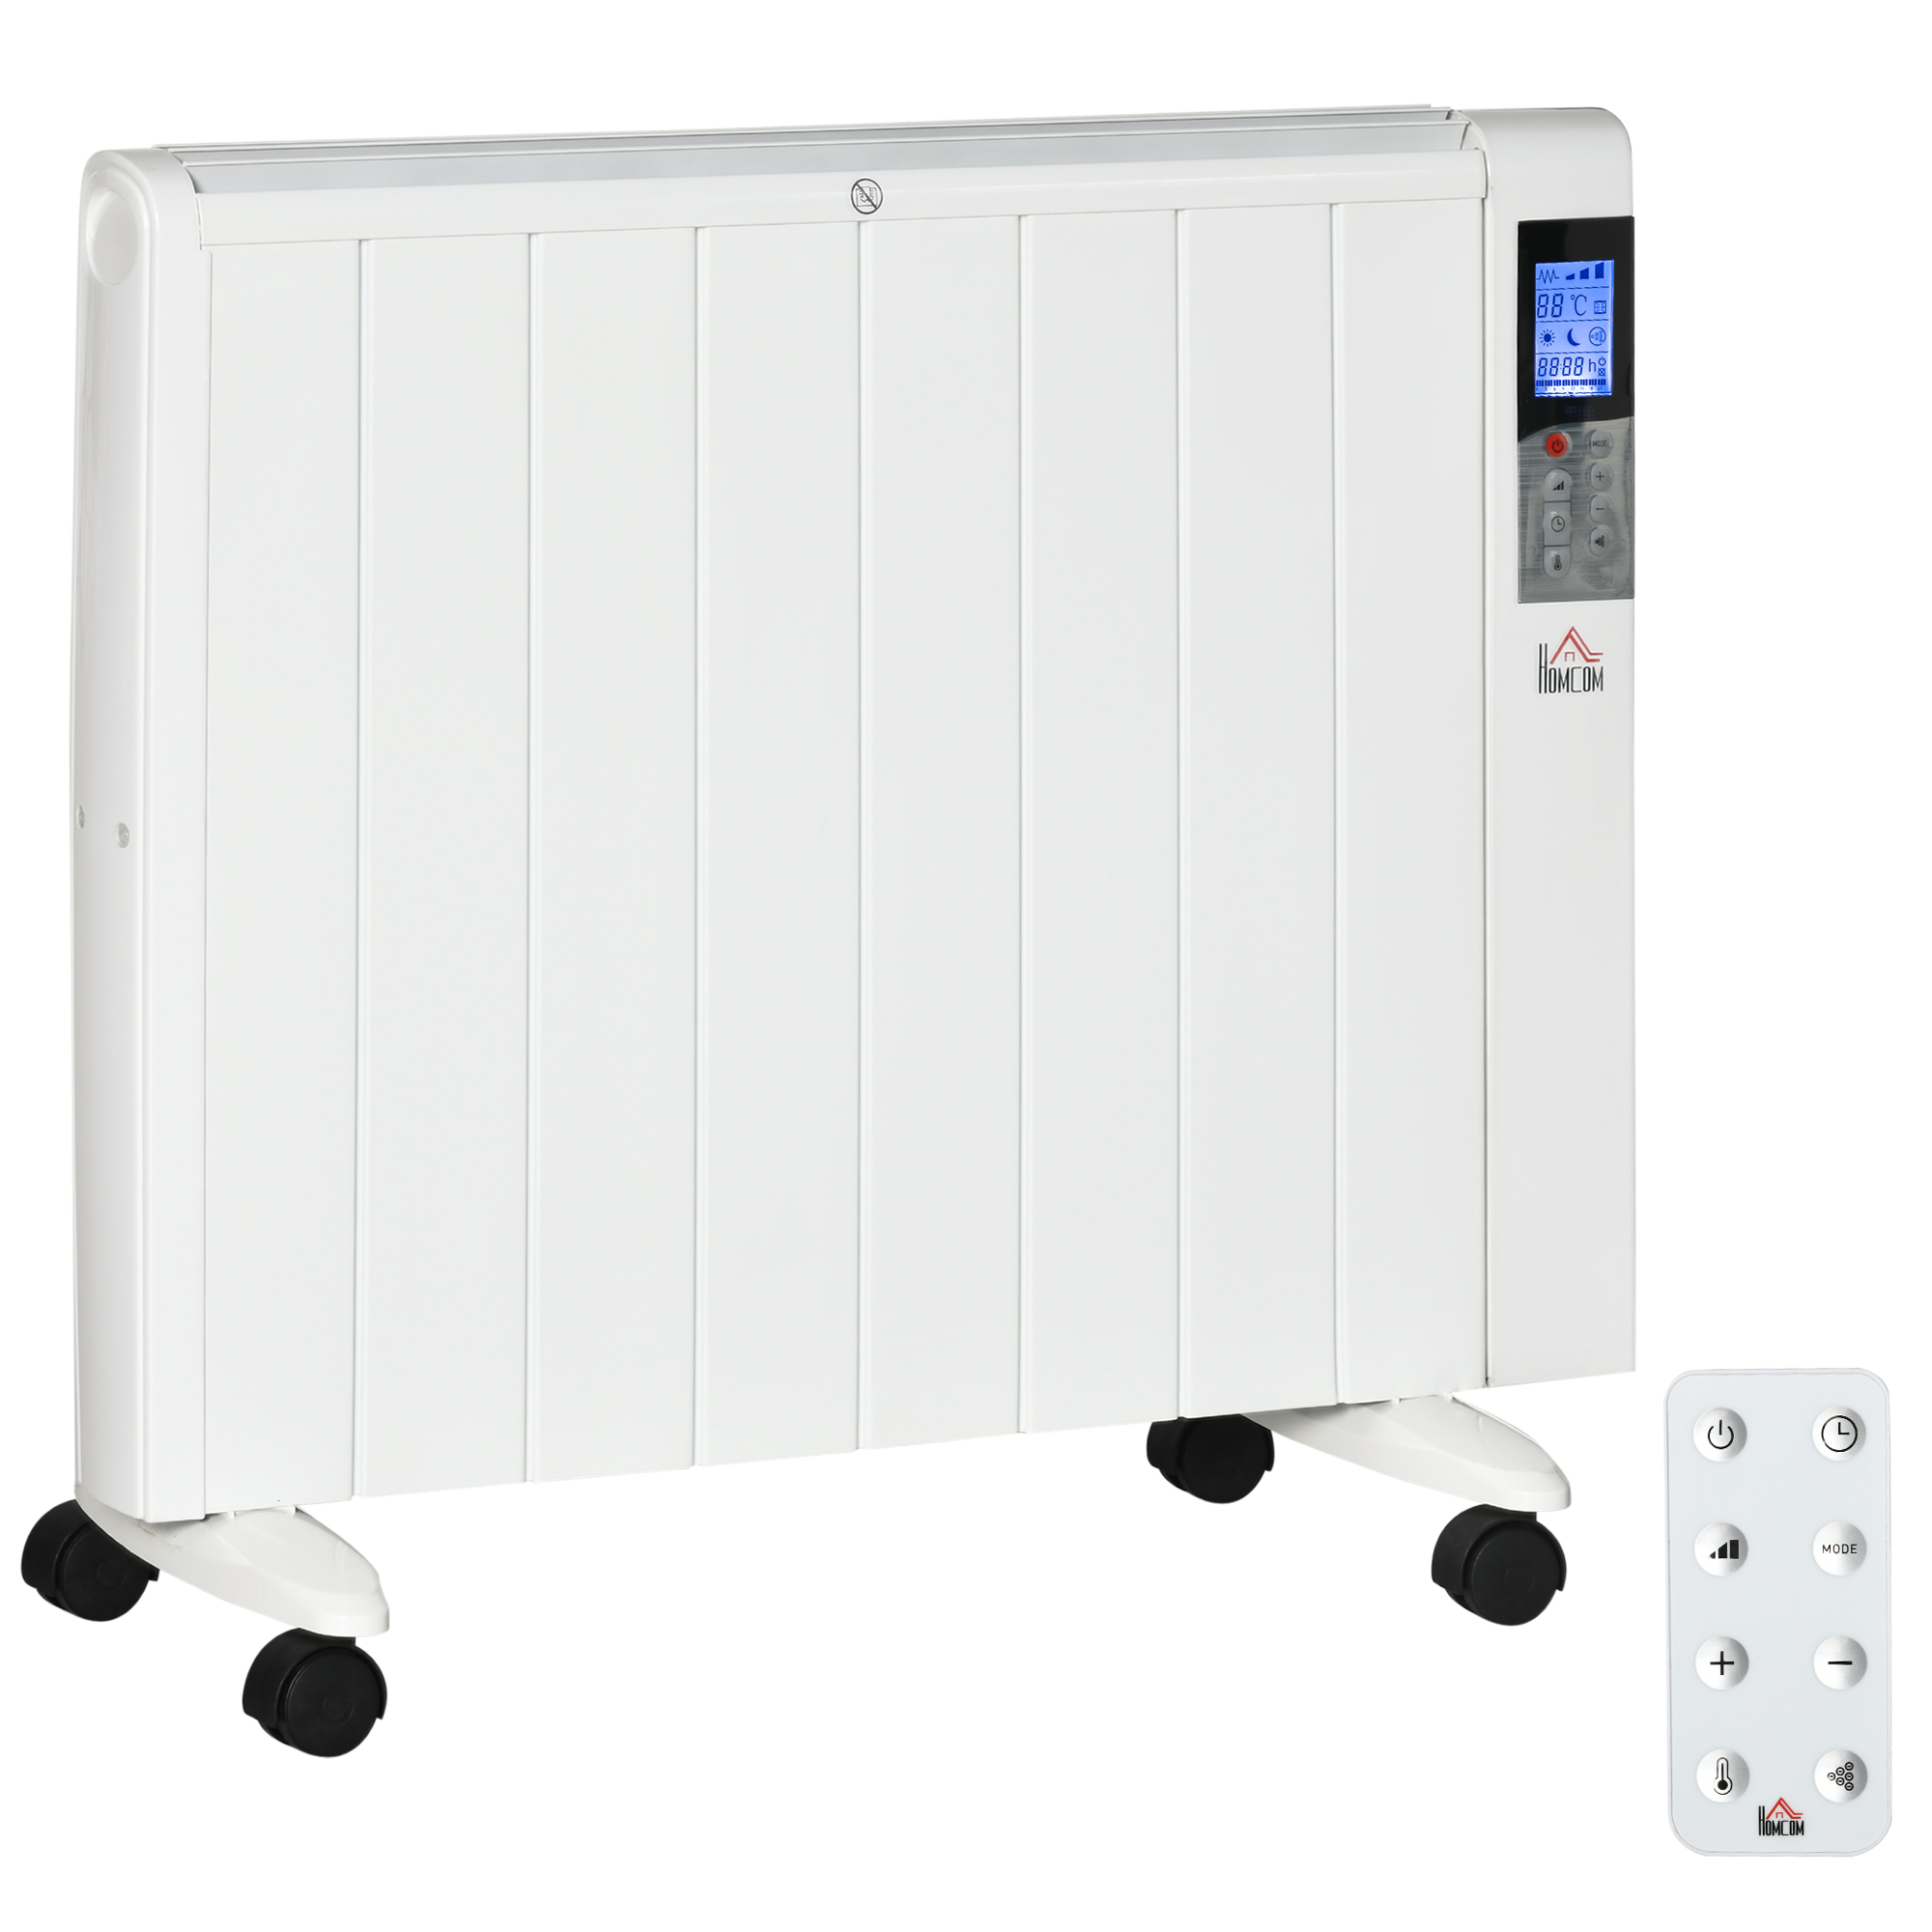 Ηλεκτρική θερμάστρα HOMCOM 1000/2000W με χρονοδιακόπτη και ρυθμίσεις θερμότητας για δωμάτια έως 15 m²